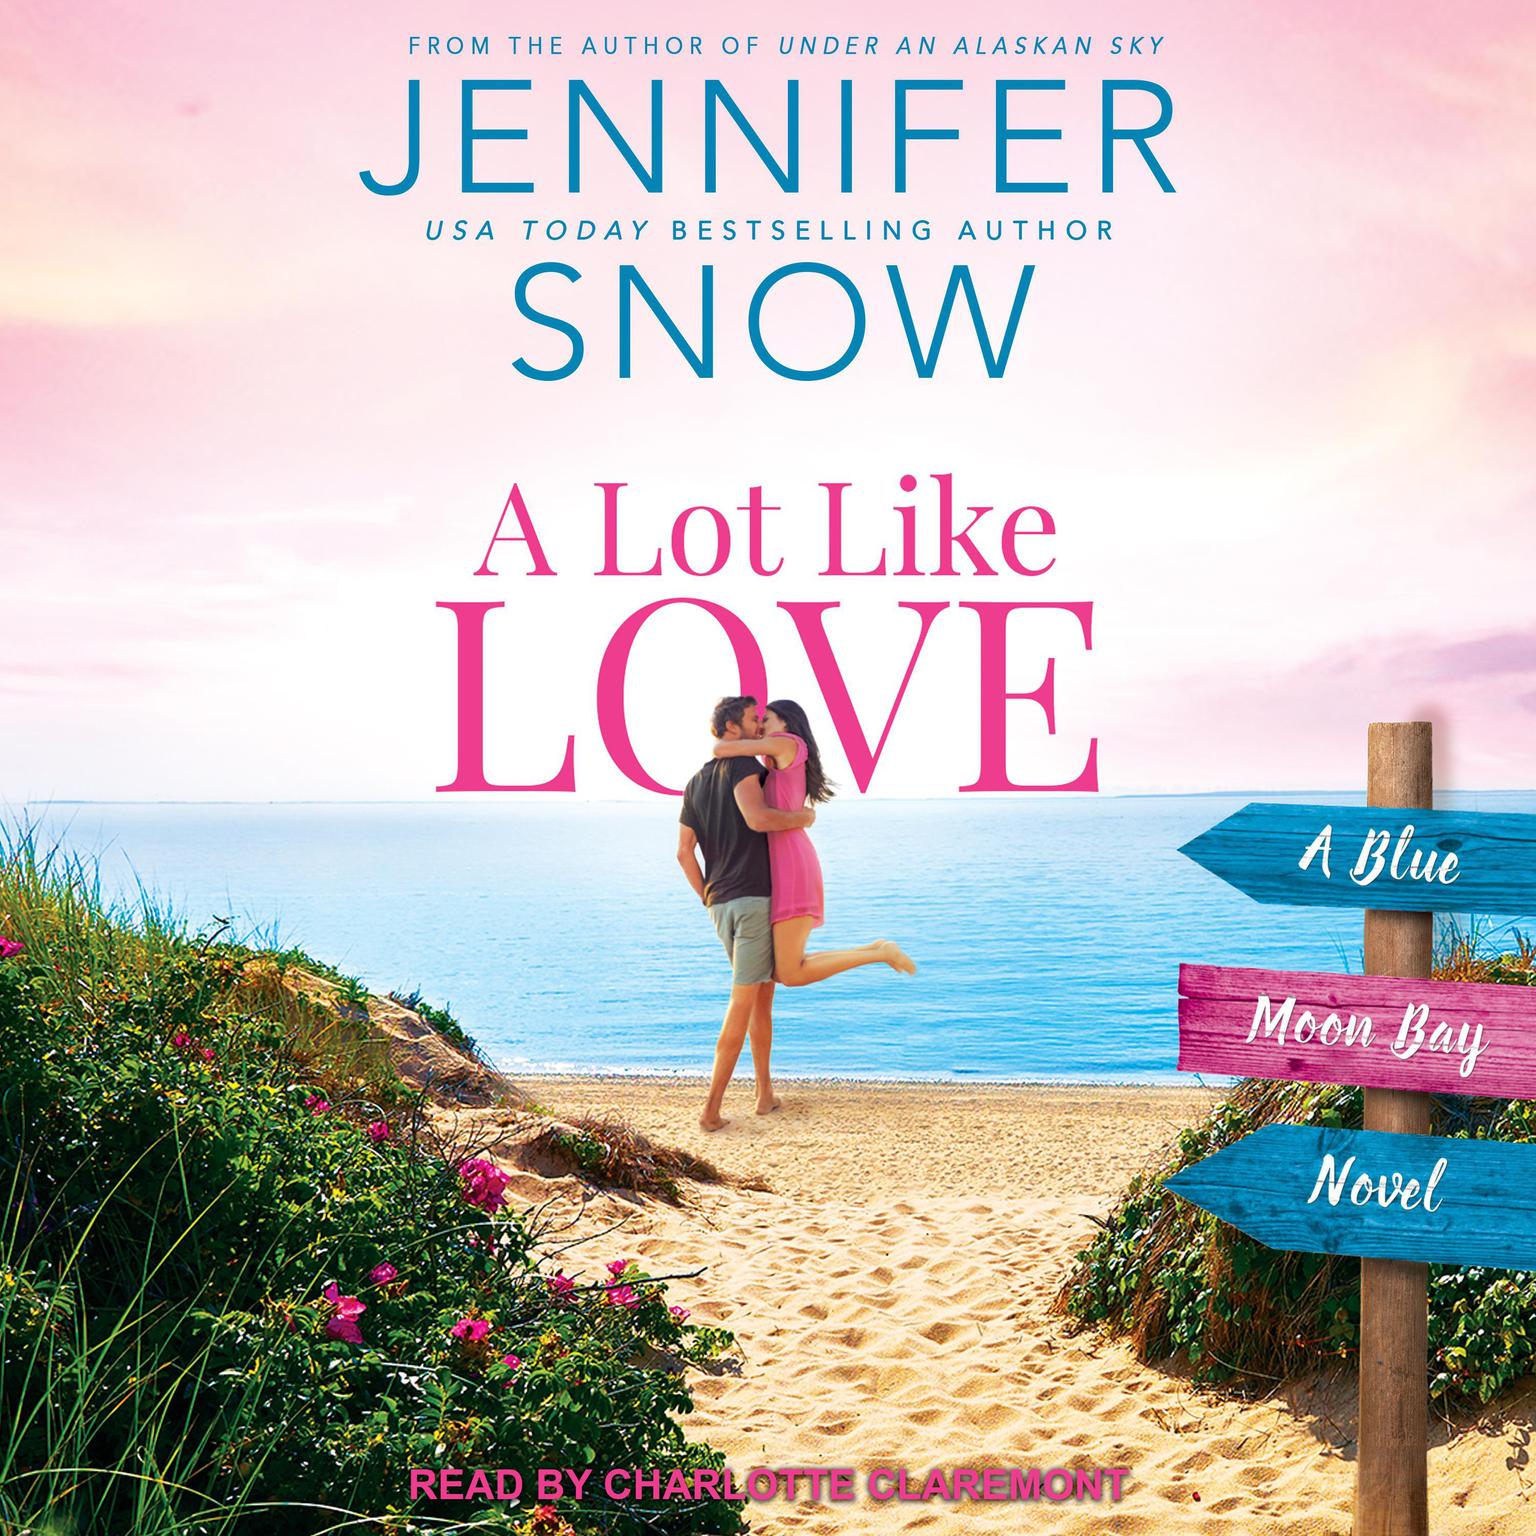 A Lot Like Love Audiobook, by Jennifer Snow